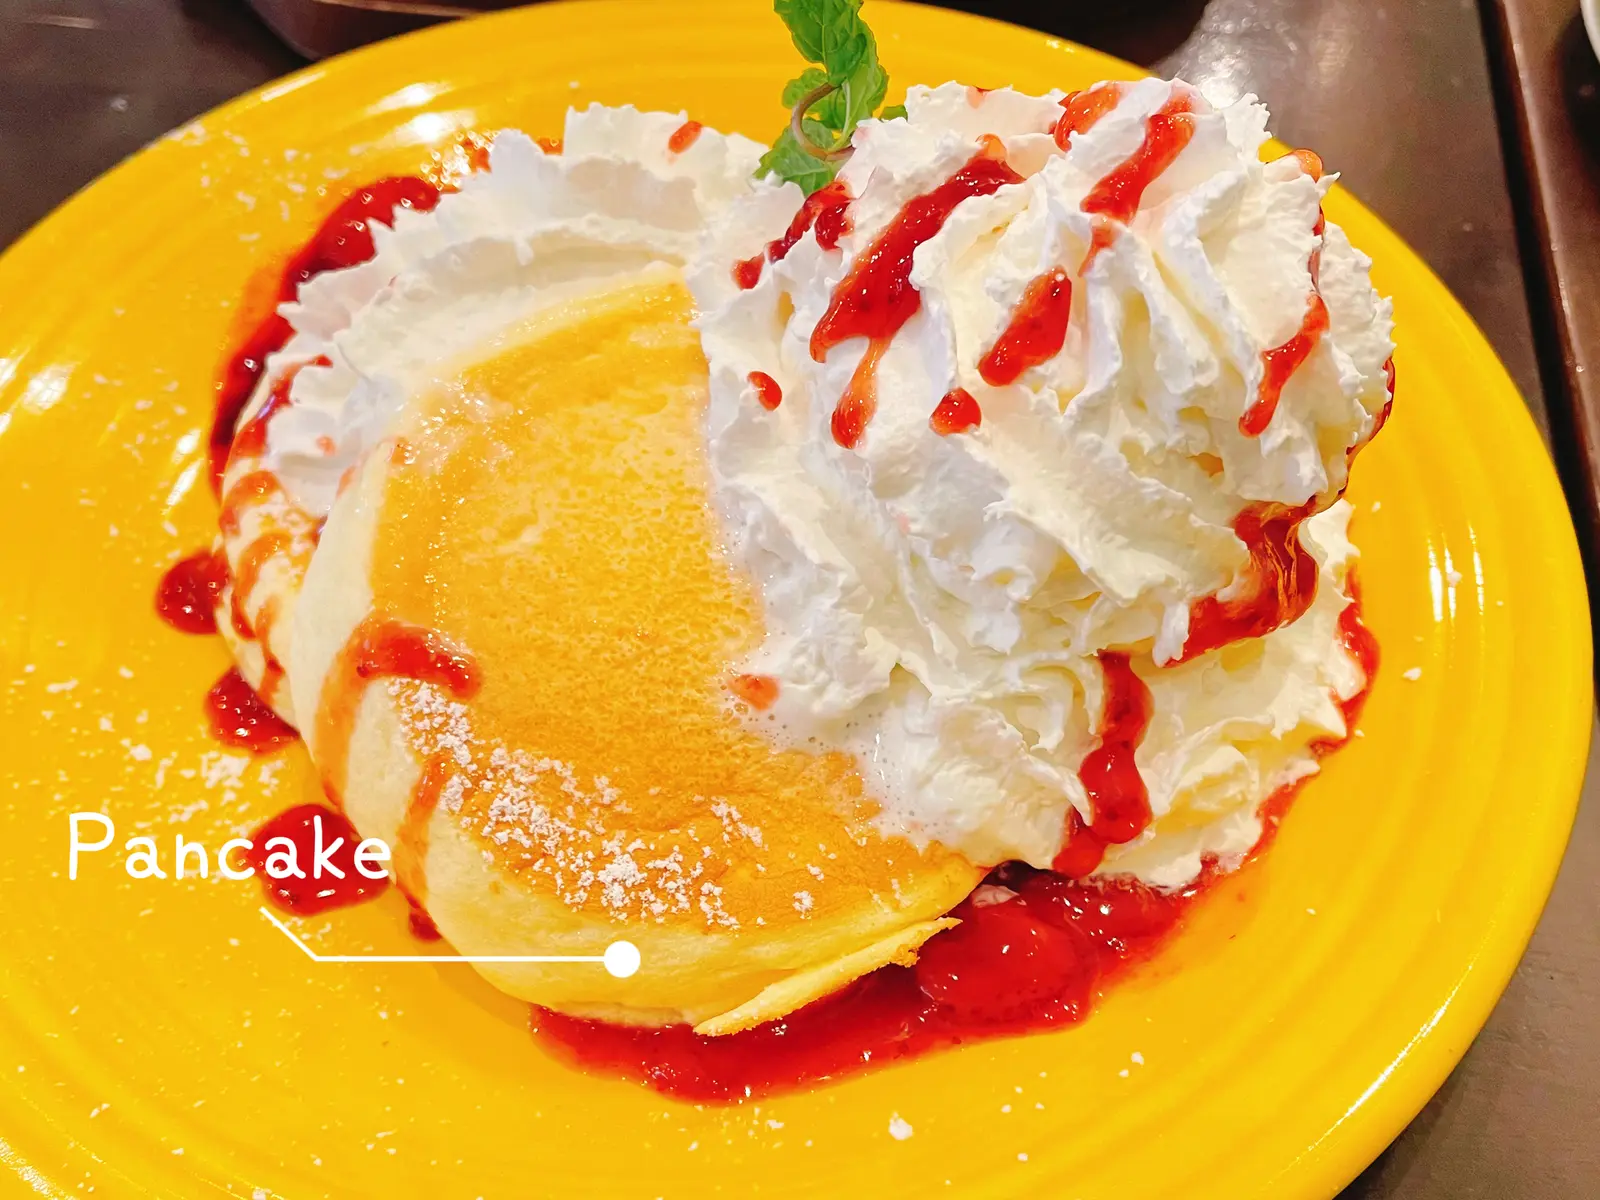 カウアイカフェいわき泉店 パンケーキ Sm0323が投稿したフォトブック Lemon8